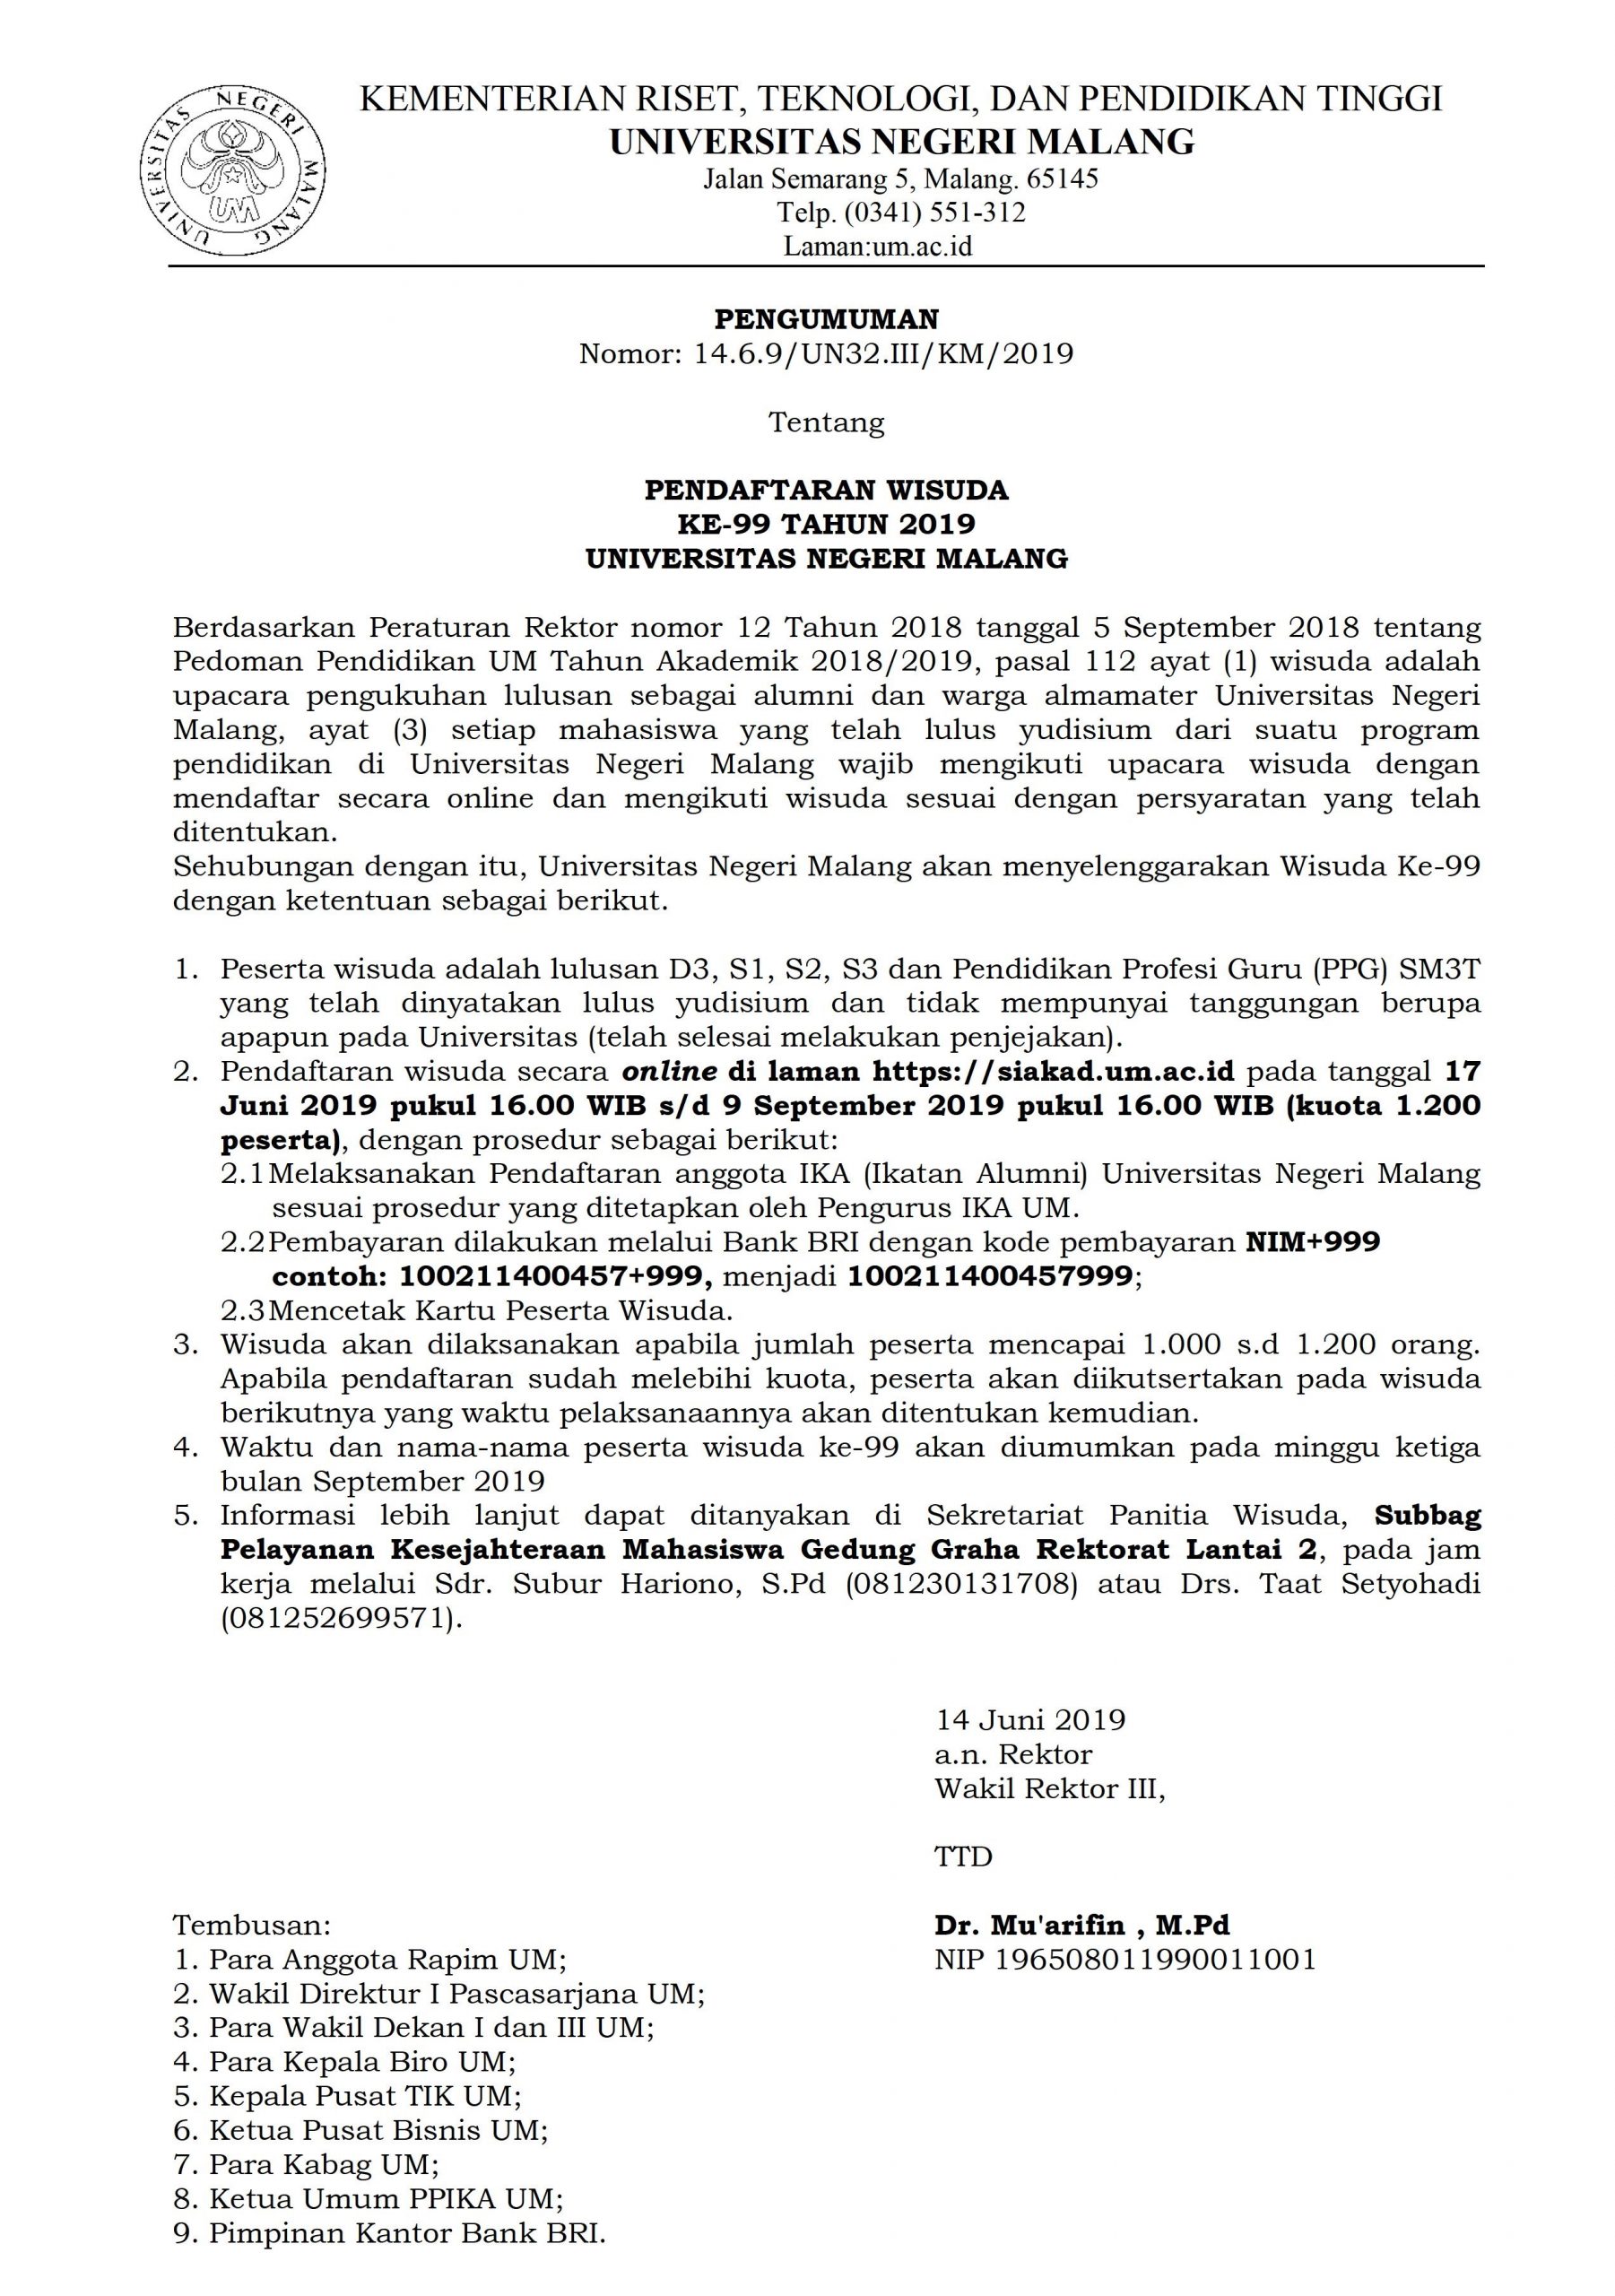 Pengumuman Pendaftaran Wisuda ke-99 Tahun 2019 Universitas Negeri Malang